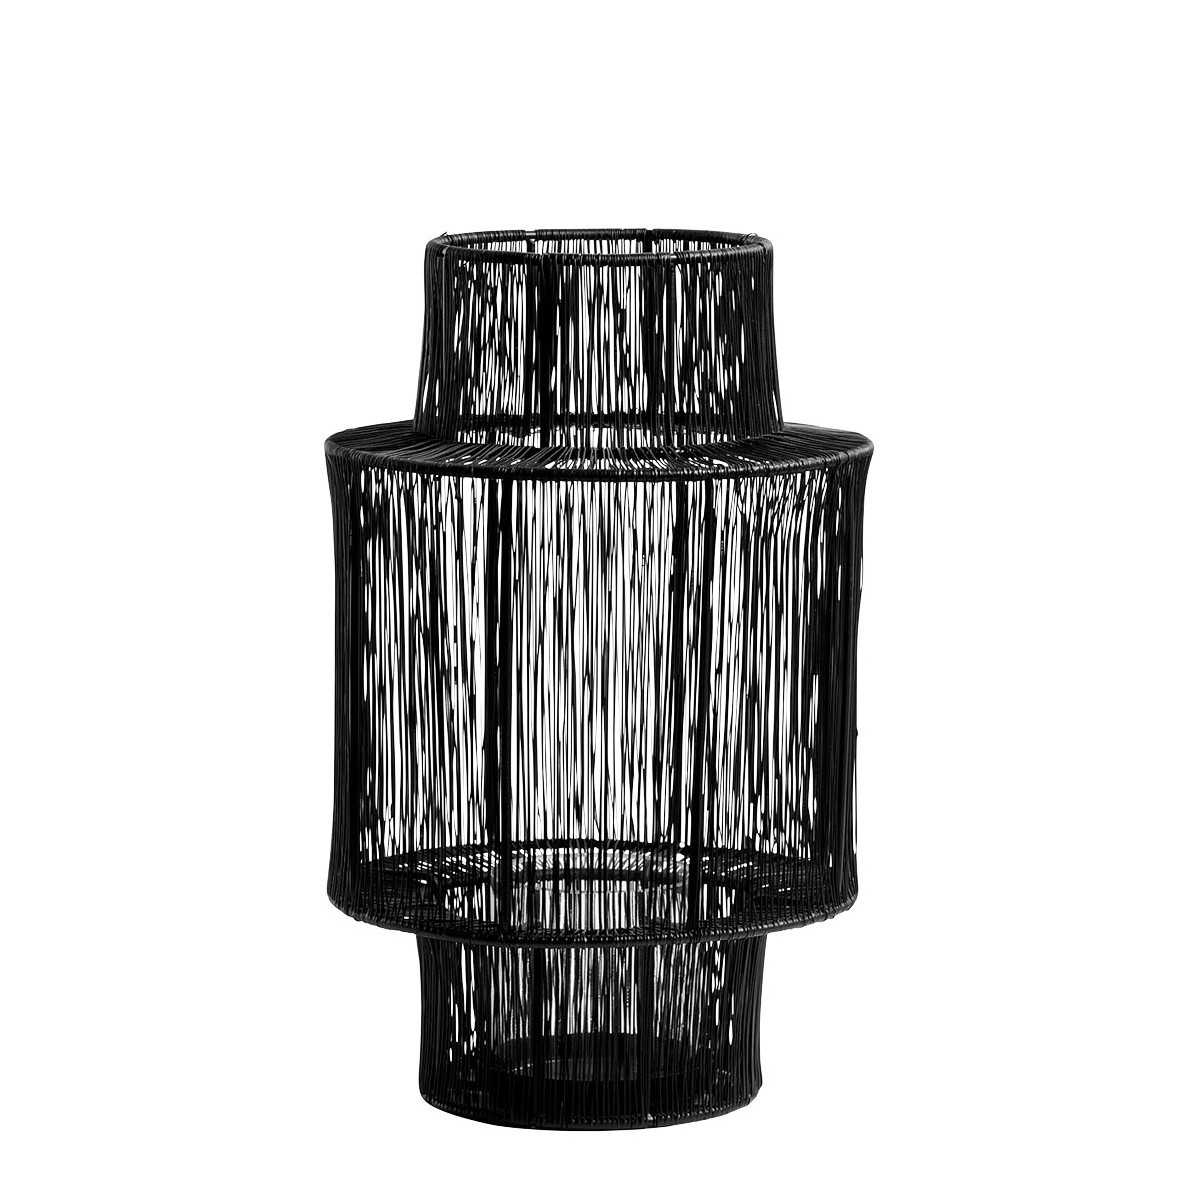 INTERIEUR- DECORATION|Lanterne ARIANE in metallo nero - Modello piccolo - H. 36 cmBLANC D'IVOIREVotivi e Lanterne